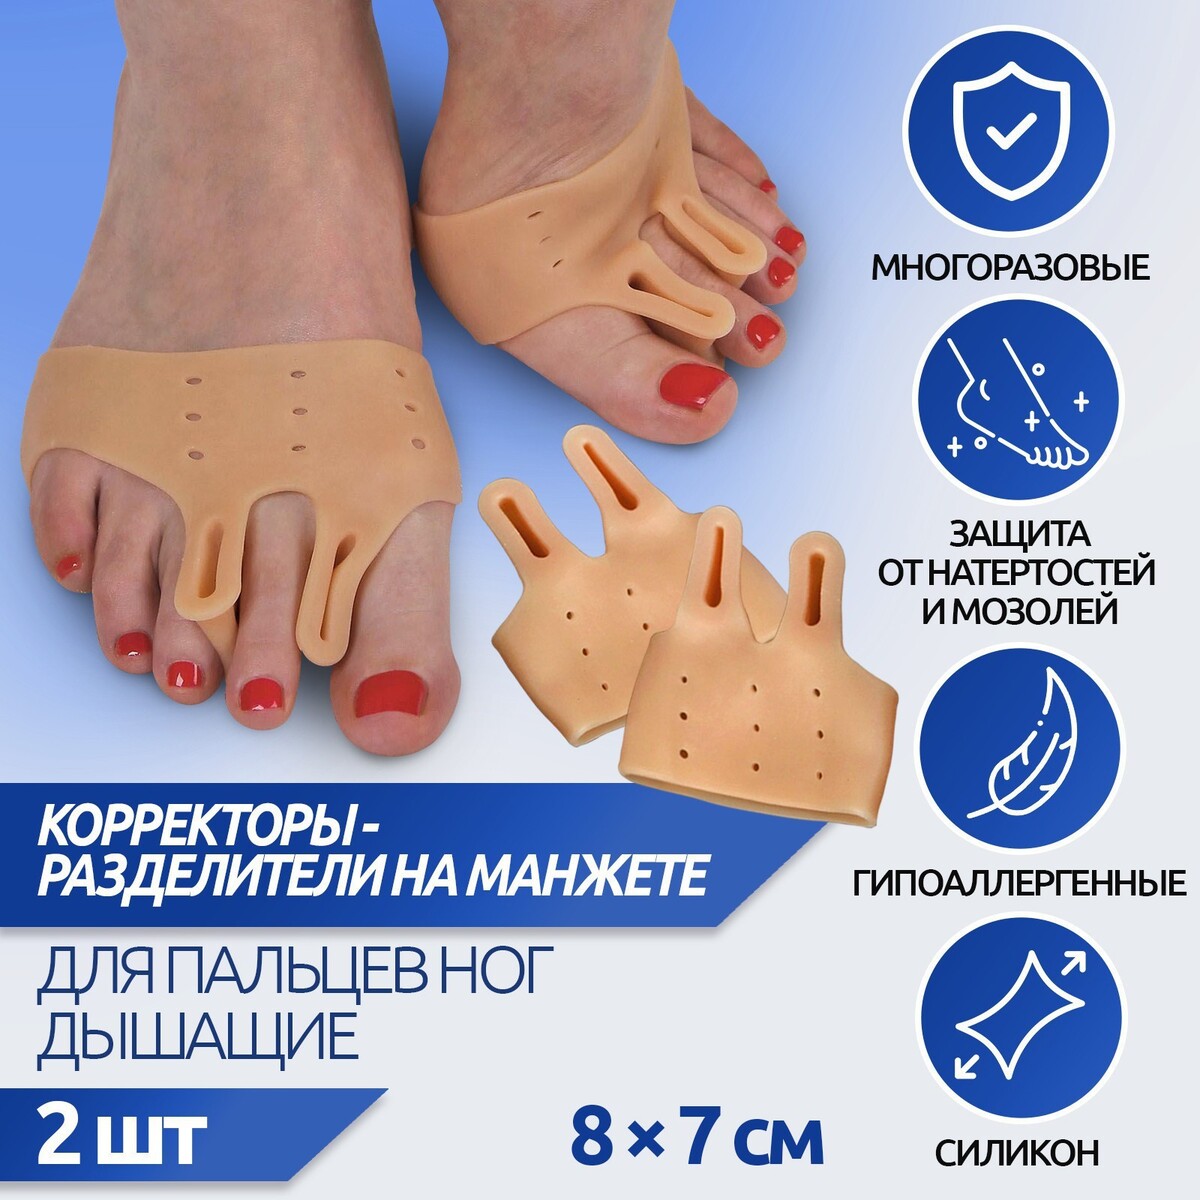 Корректоры - разделители для пальцев ног, на манжете, дышащие, 2 разделителя, силиконовые, 8 × 7 см, пара, цвет бежевый